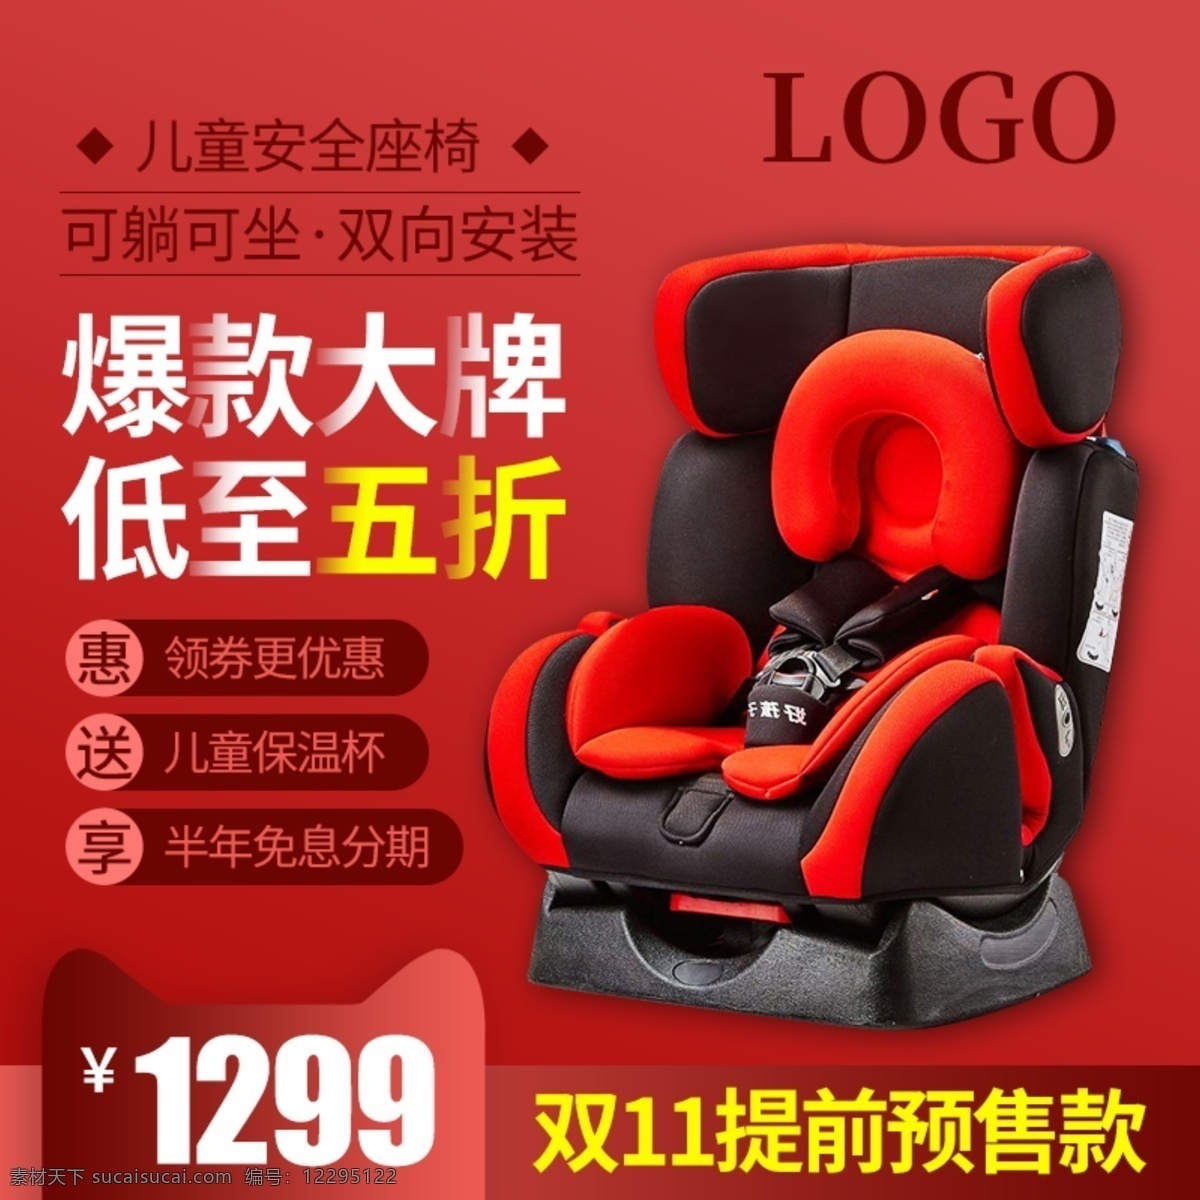 双十 双 预售 母婴 类 儿童座椅 主 图 直通车 母婴用品 主图直通车 红色 促销海报 2018 双十一来啦 儿童安全座椅 爆款大牌